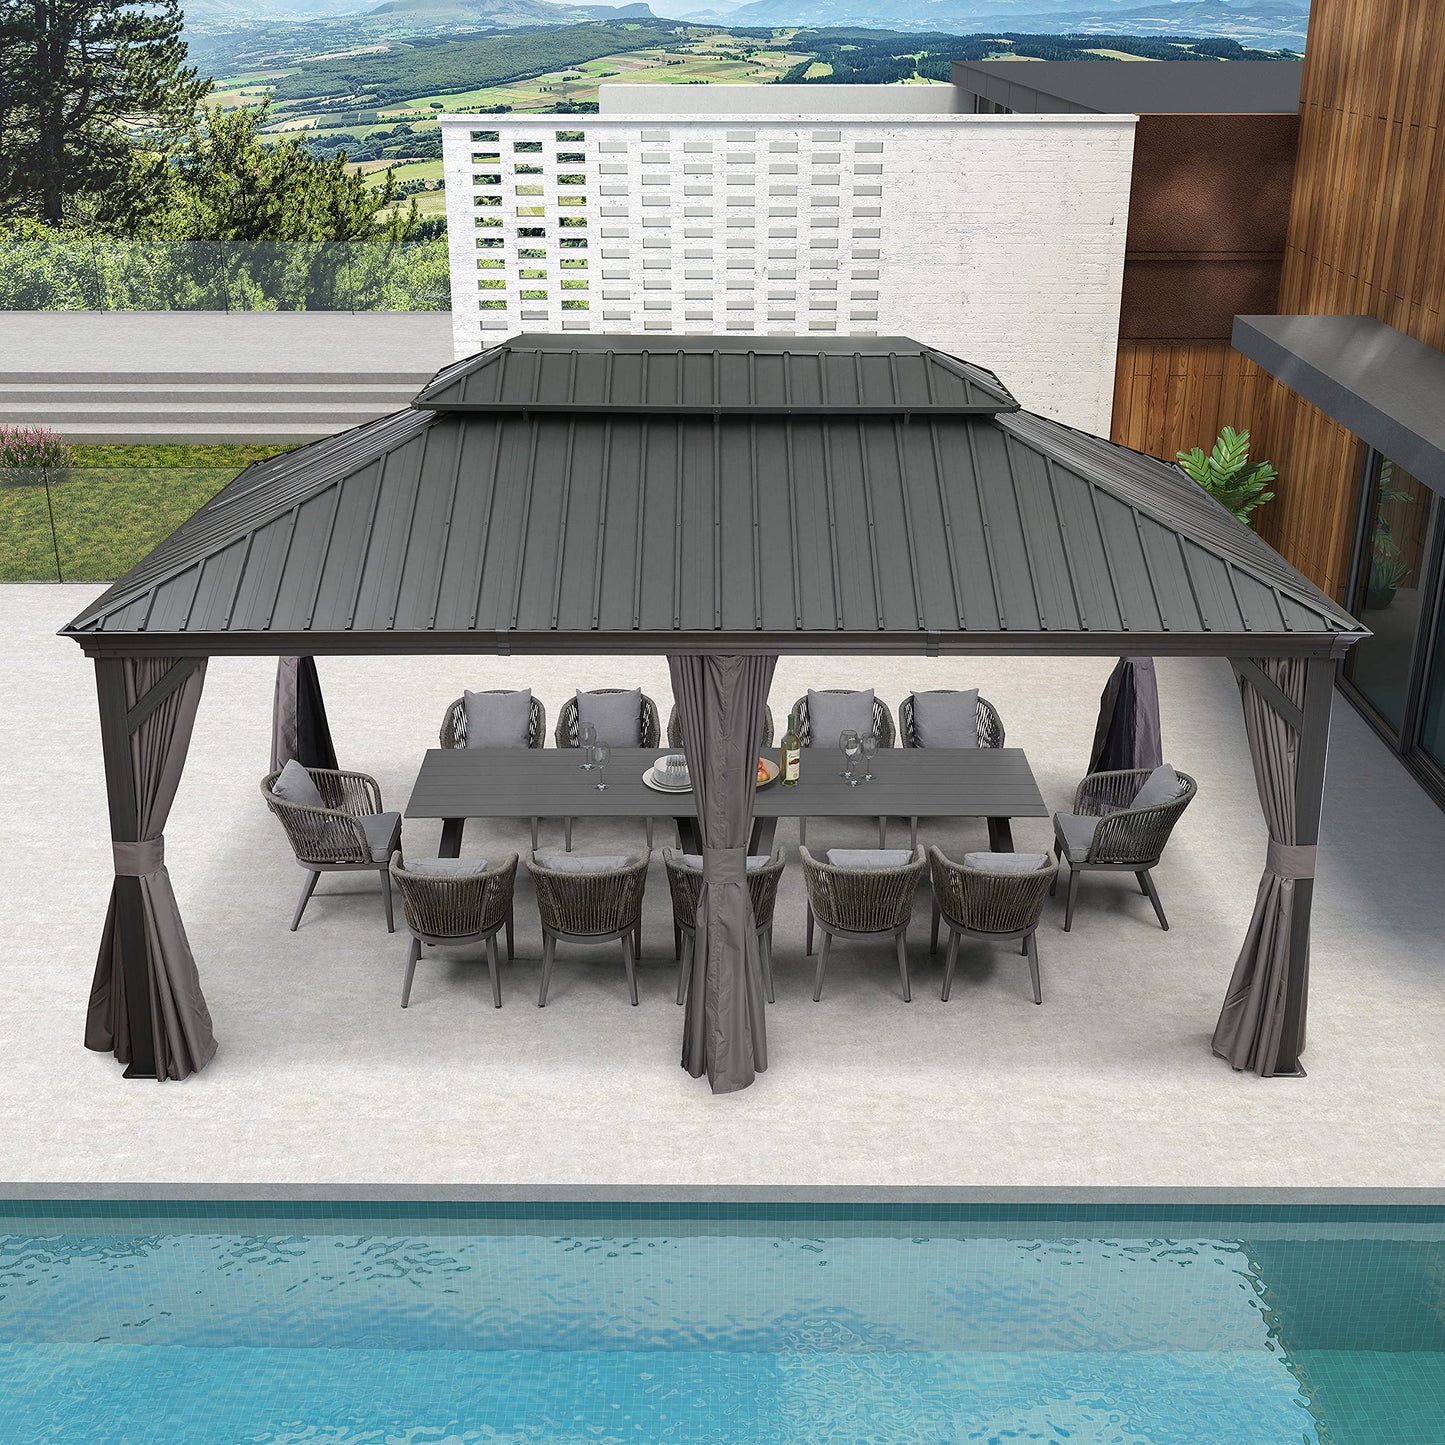 PURPLE LEAF Cenador permanente de aluminio con techo rígido de 12' x 18' con techo doble de acero galvanizado para patio, césped y jardín, cortinas y red incluidas, gris